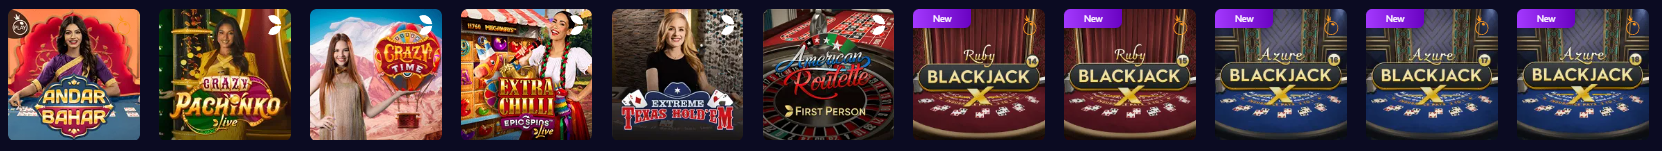 7bit online casino